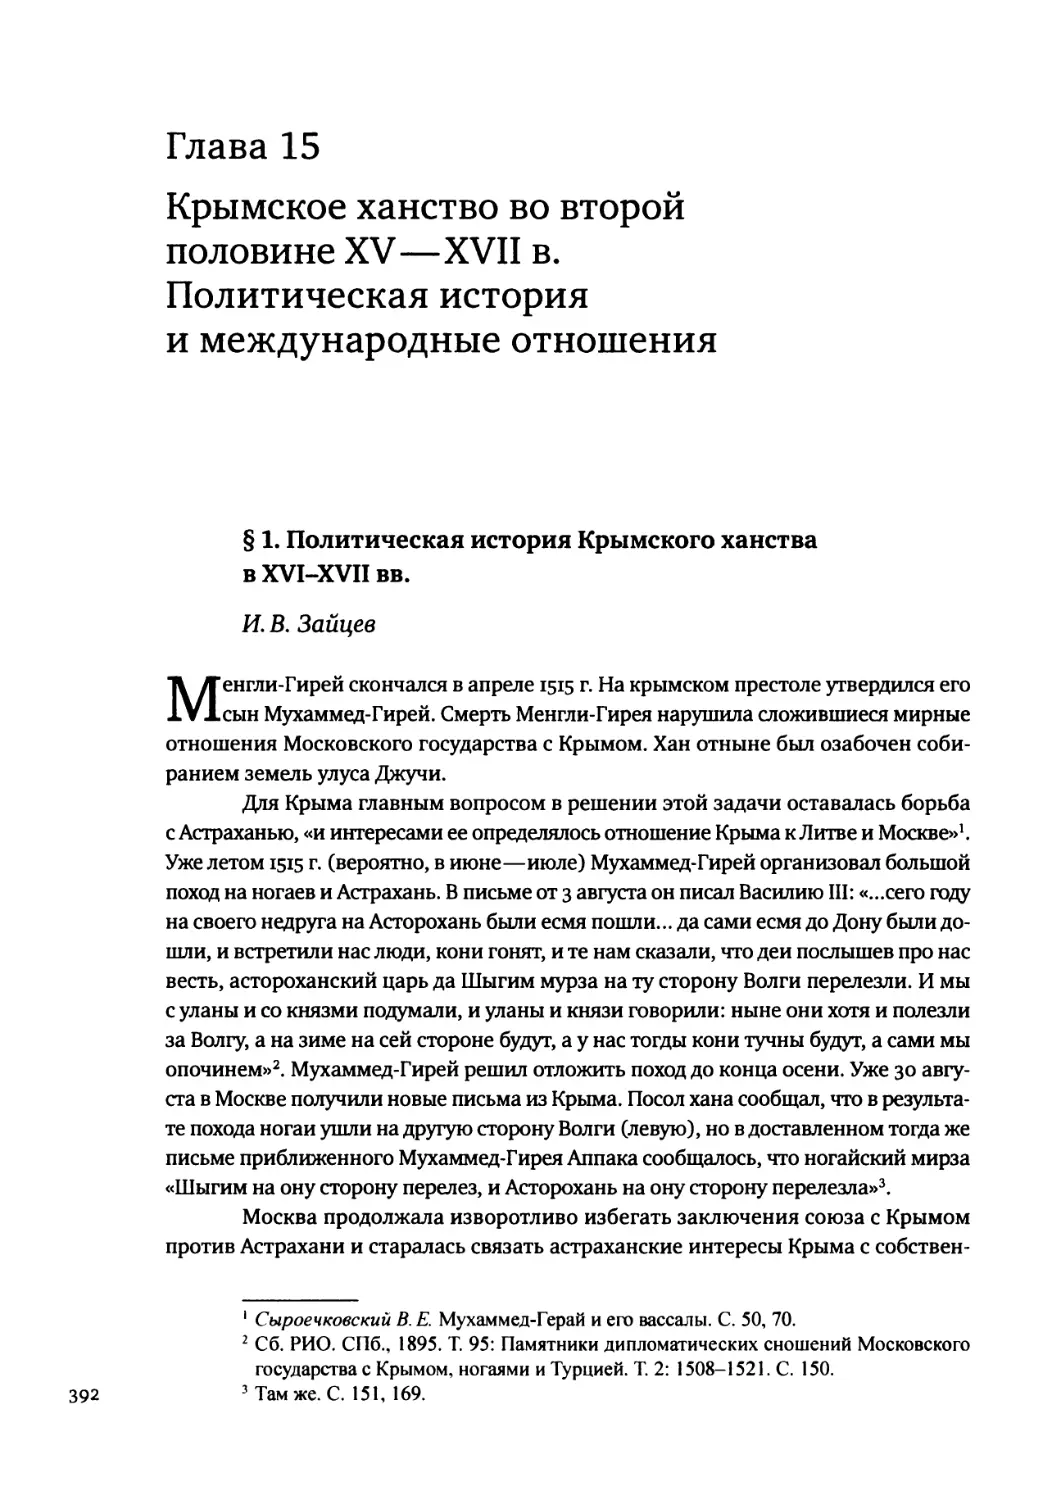 Глава 15. Крымское ханство во второй половине XV—XVII в. Политическая история и международные отношения